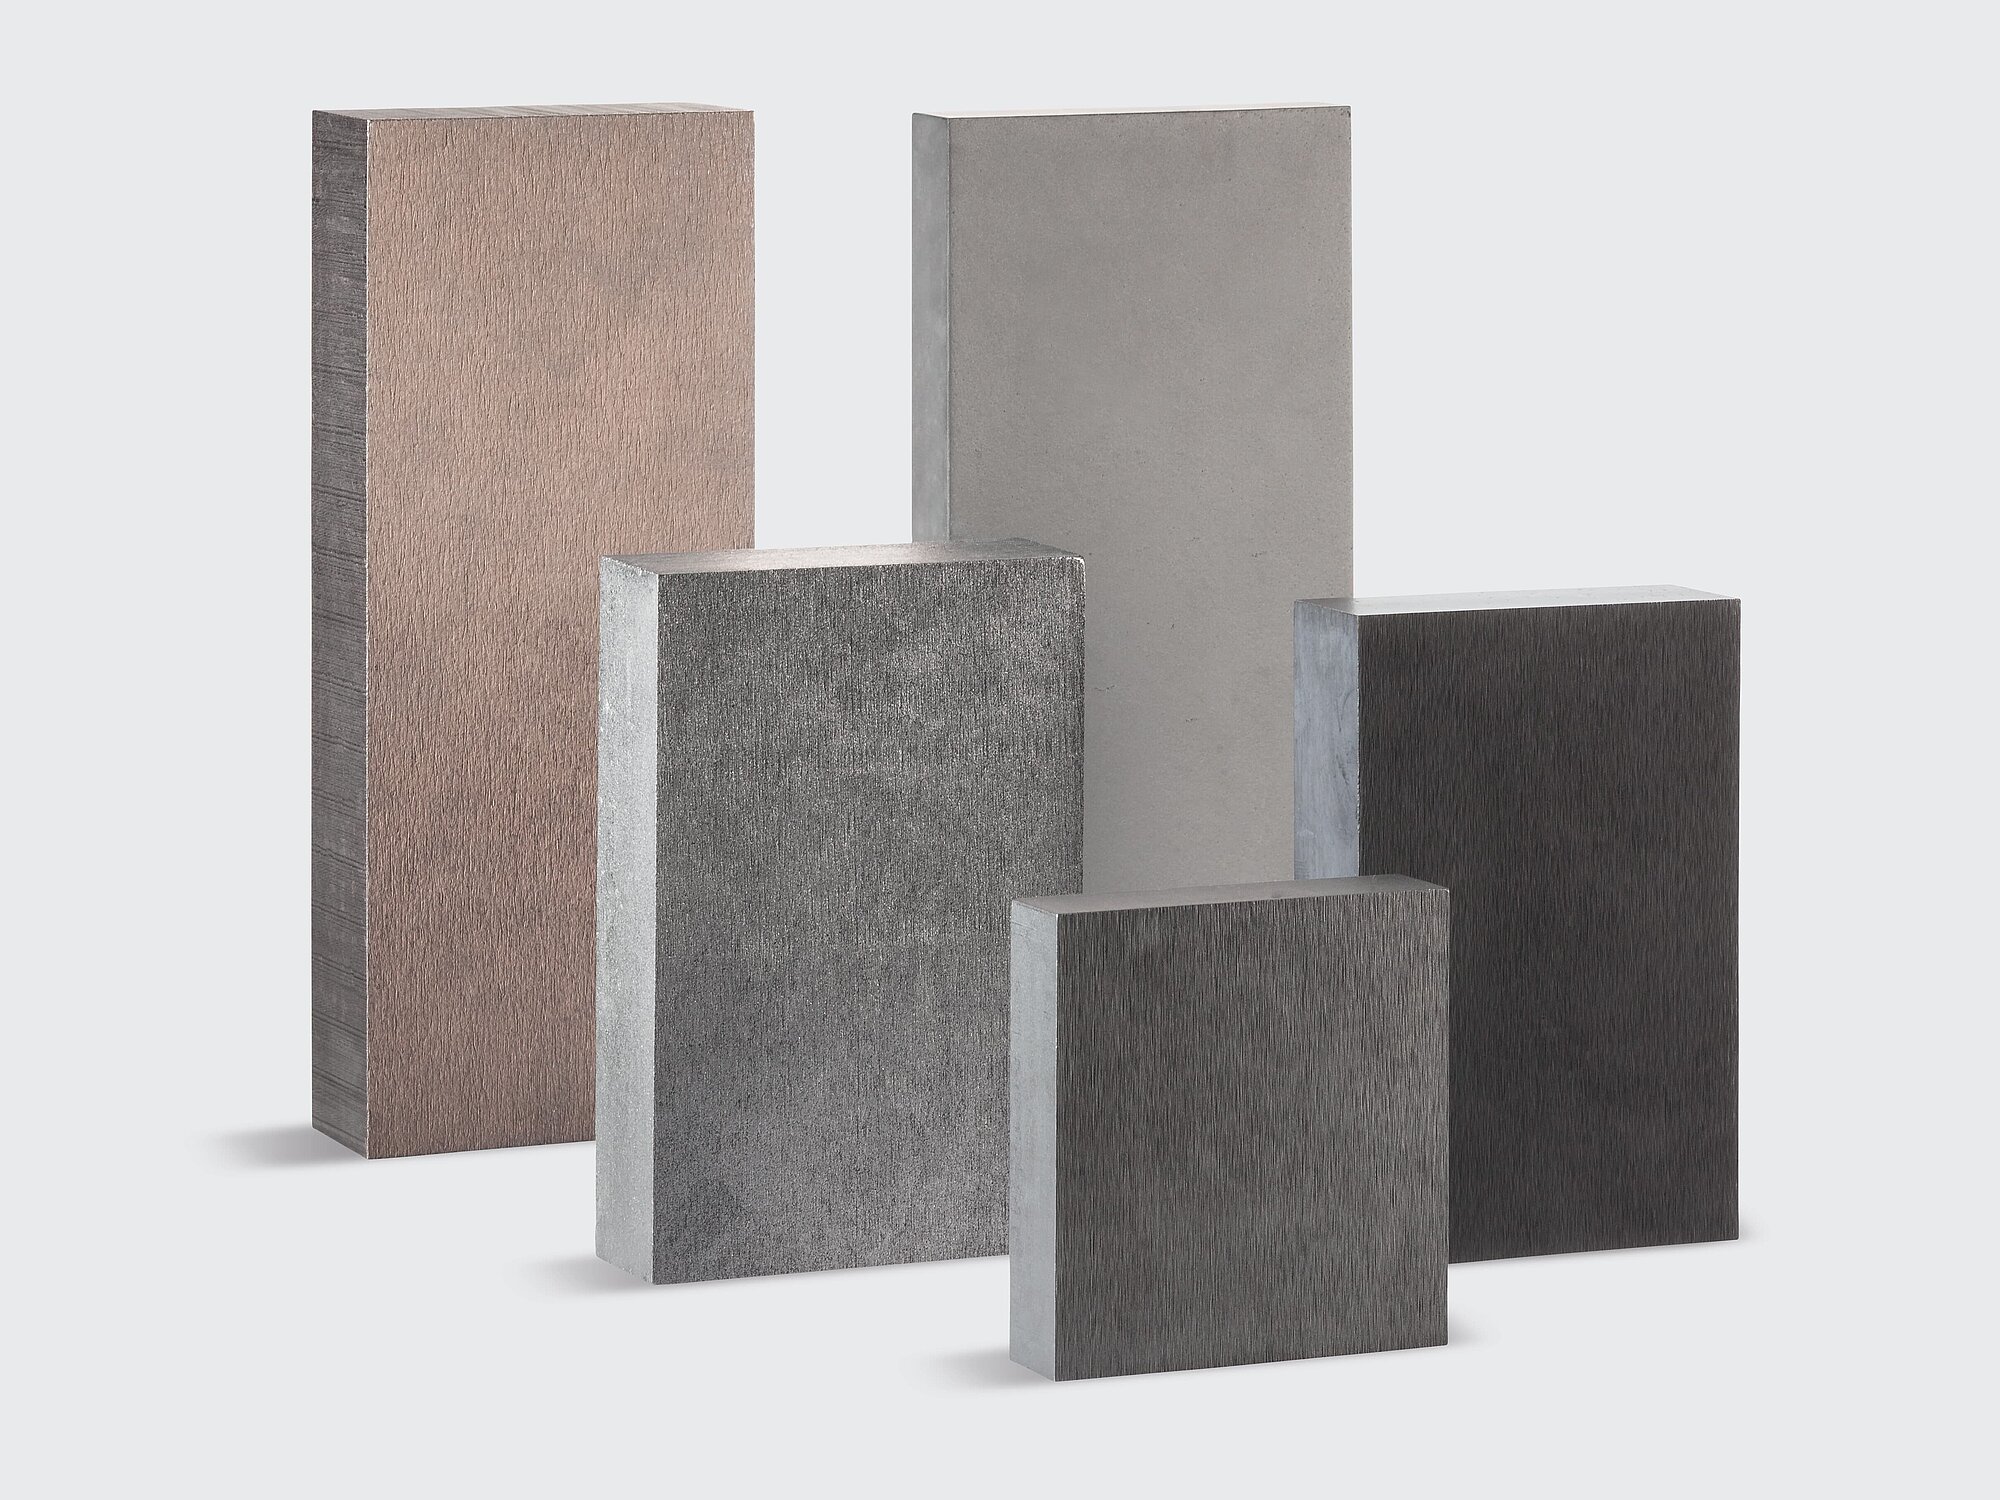 Bürstenplatten aus Kupfer und Silbergraphit der SGL Carbon